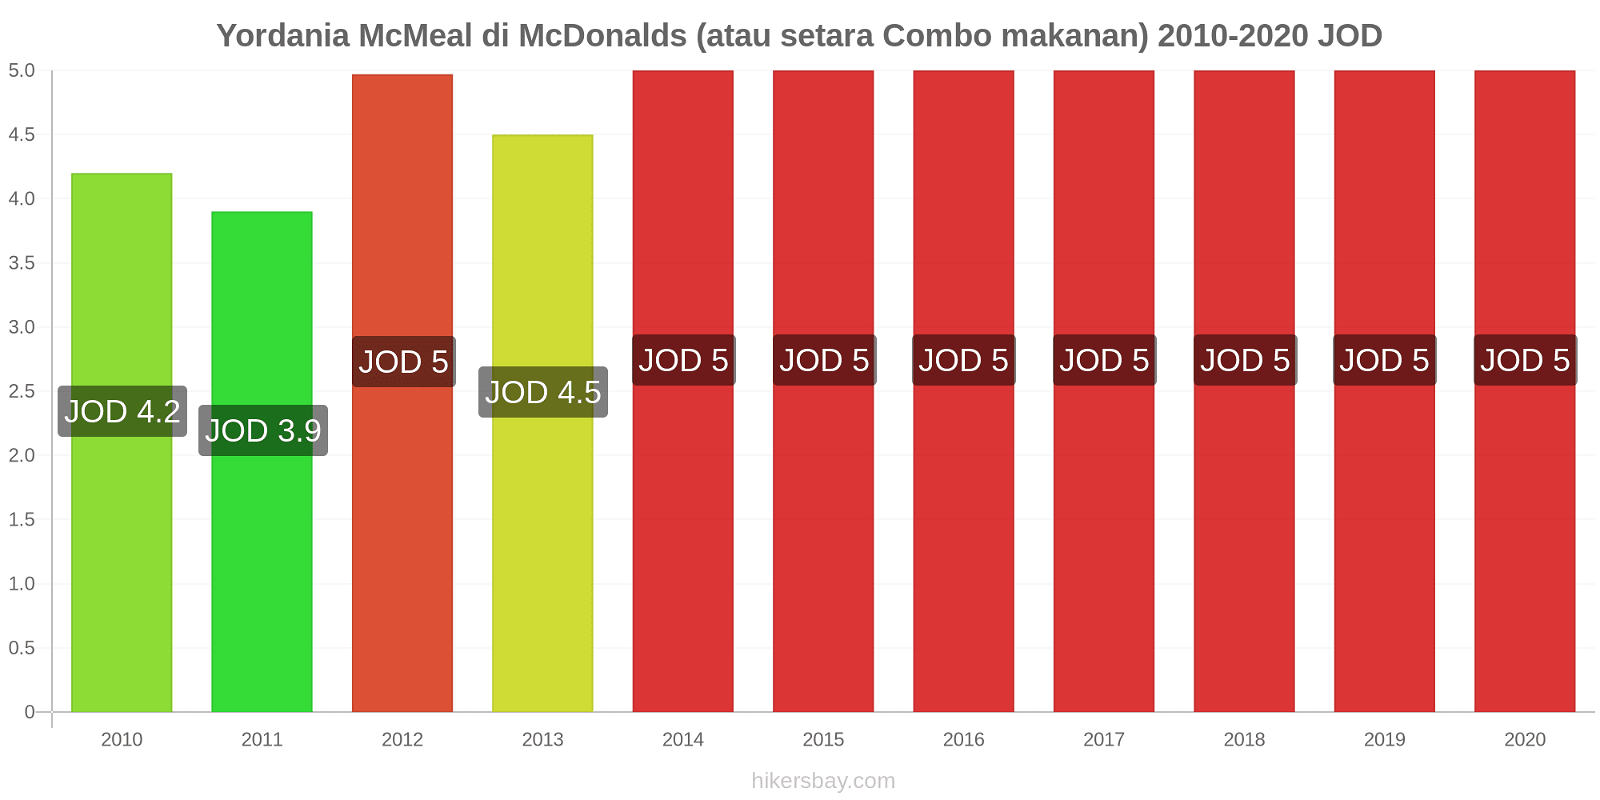 Yordania perubahan harga McMeal di McDonalds (atau setara Combo makanan) hikersbay.com